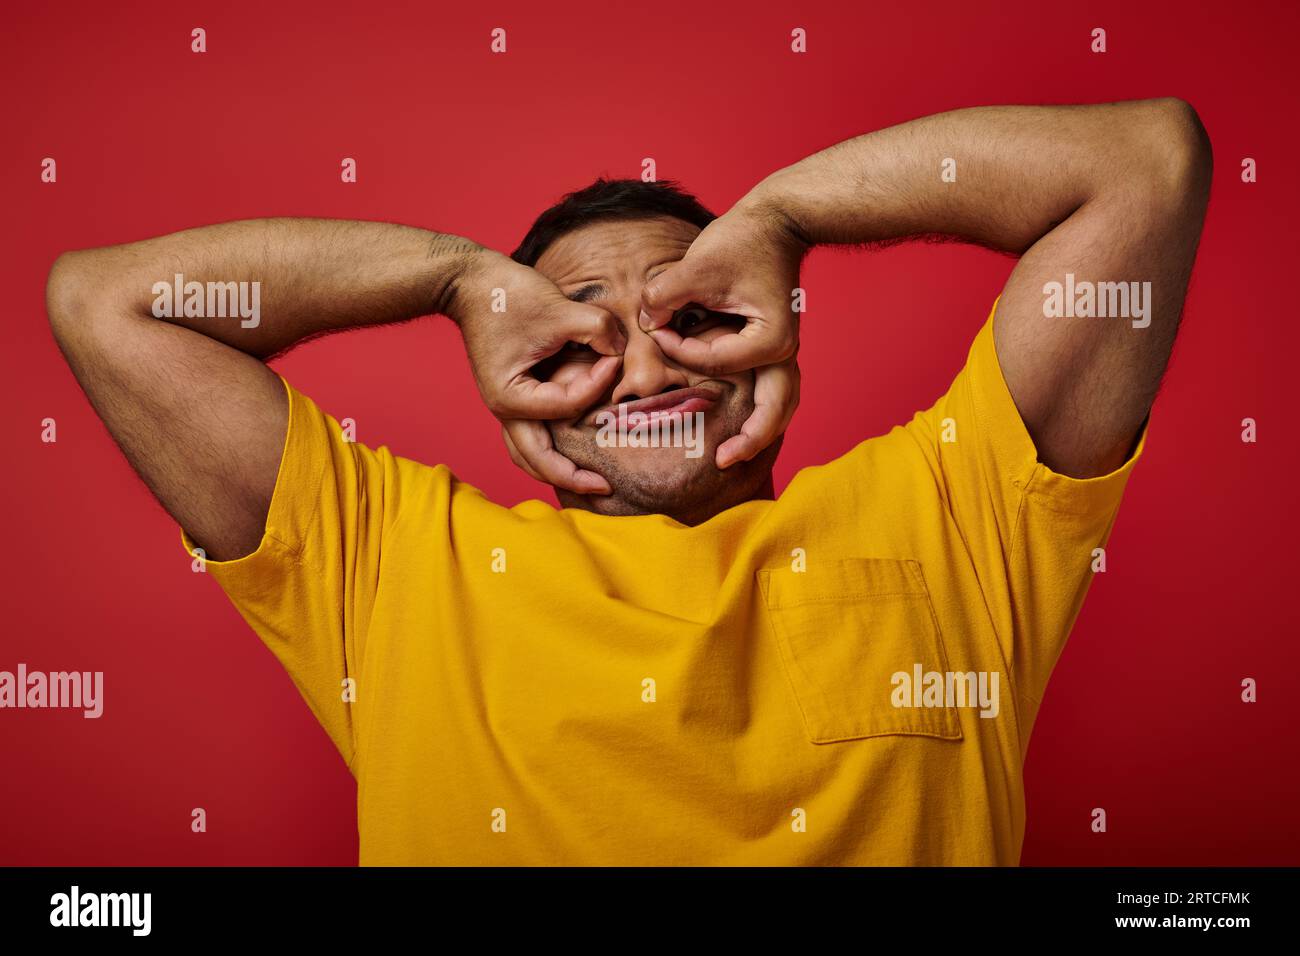 simpatico indiano con t-shirt gialla grigia e gesti su sfondo rosso, faccia espressiva Foto Stock